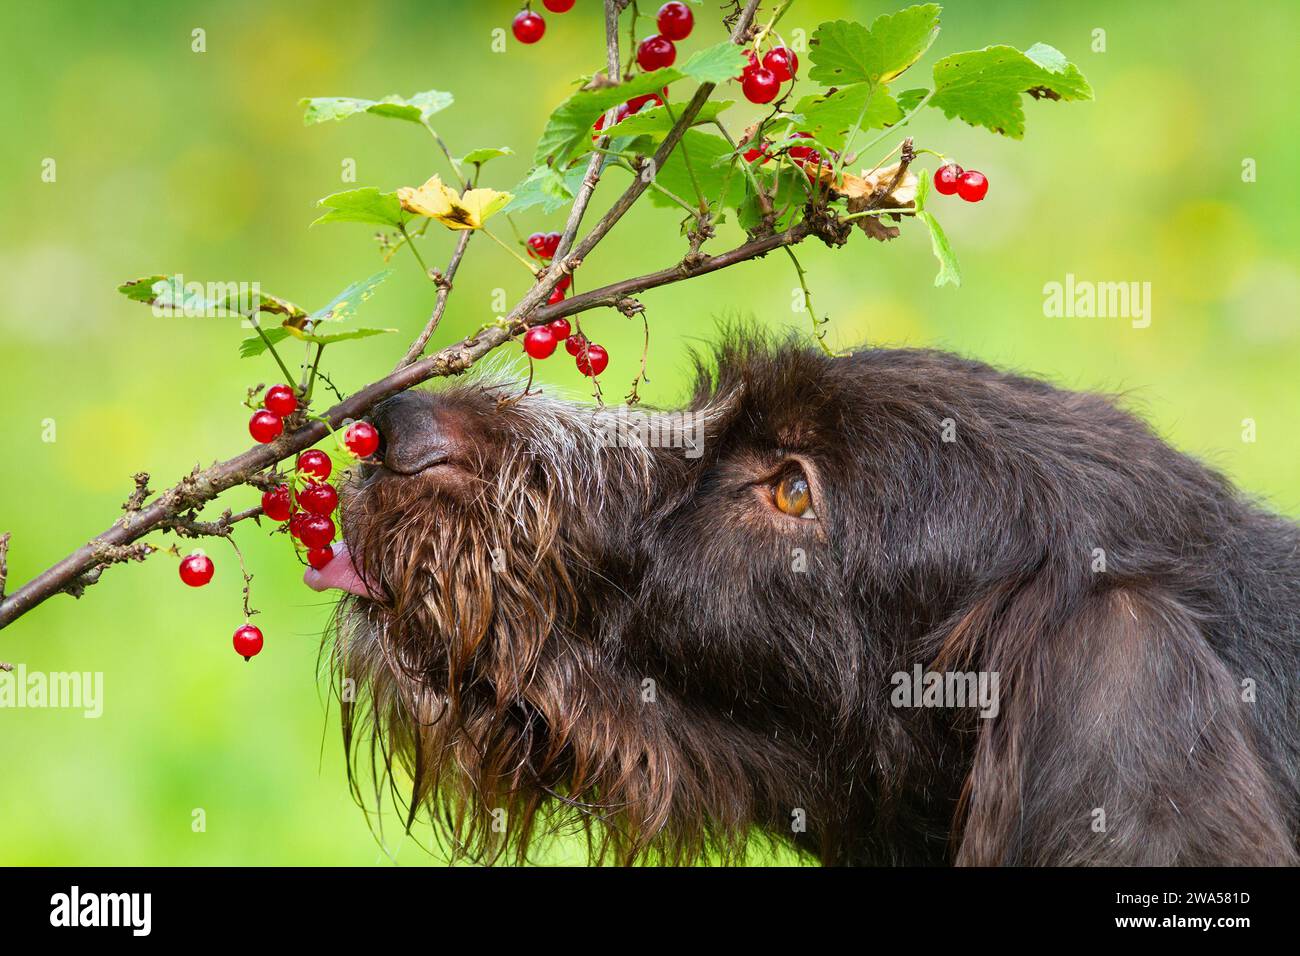 Le chien mange des baies de groseilles rouges directement de la branche. Le bout de la langue touche les baies. Gros plan. Banque D'Images